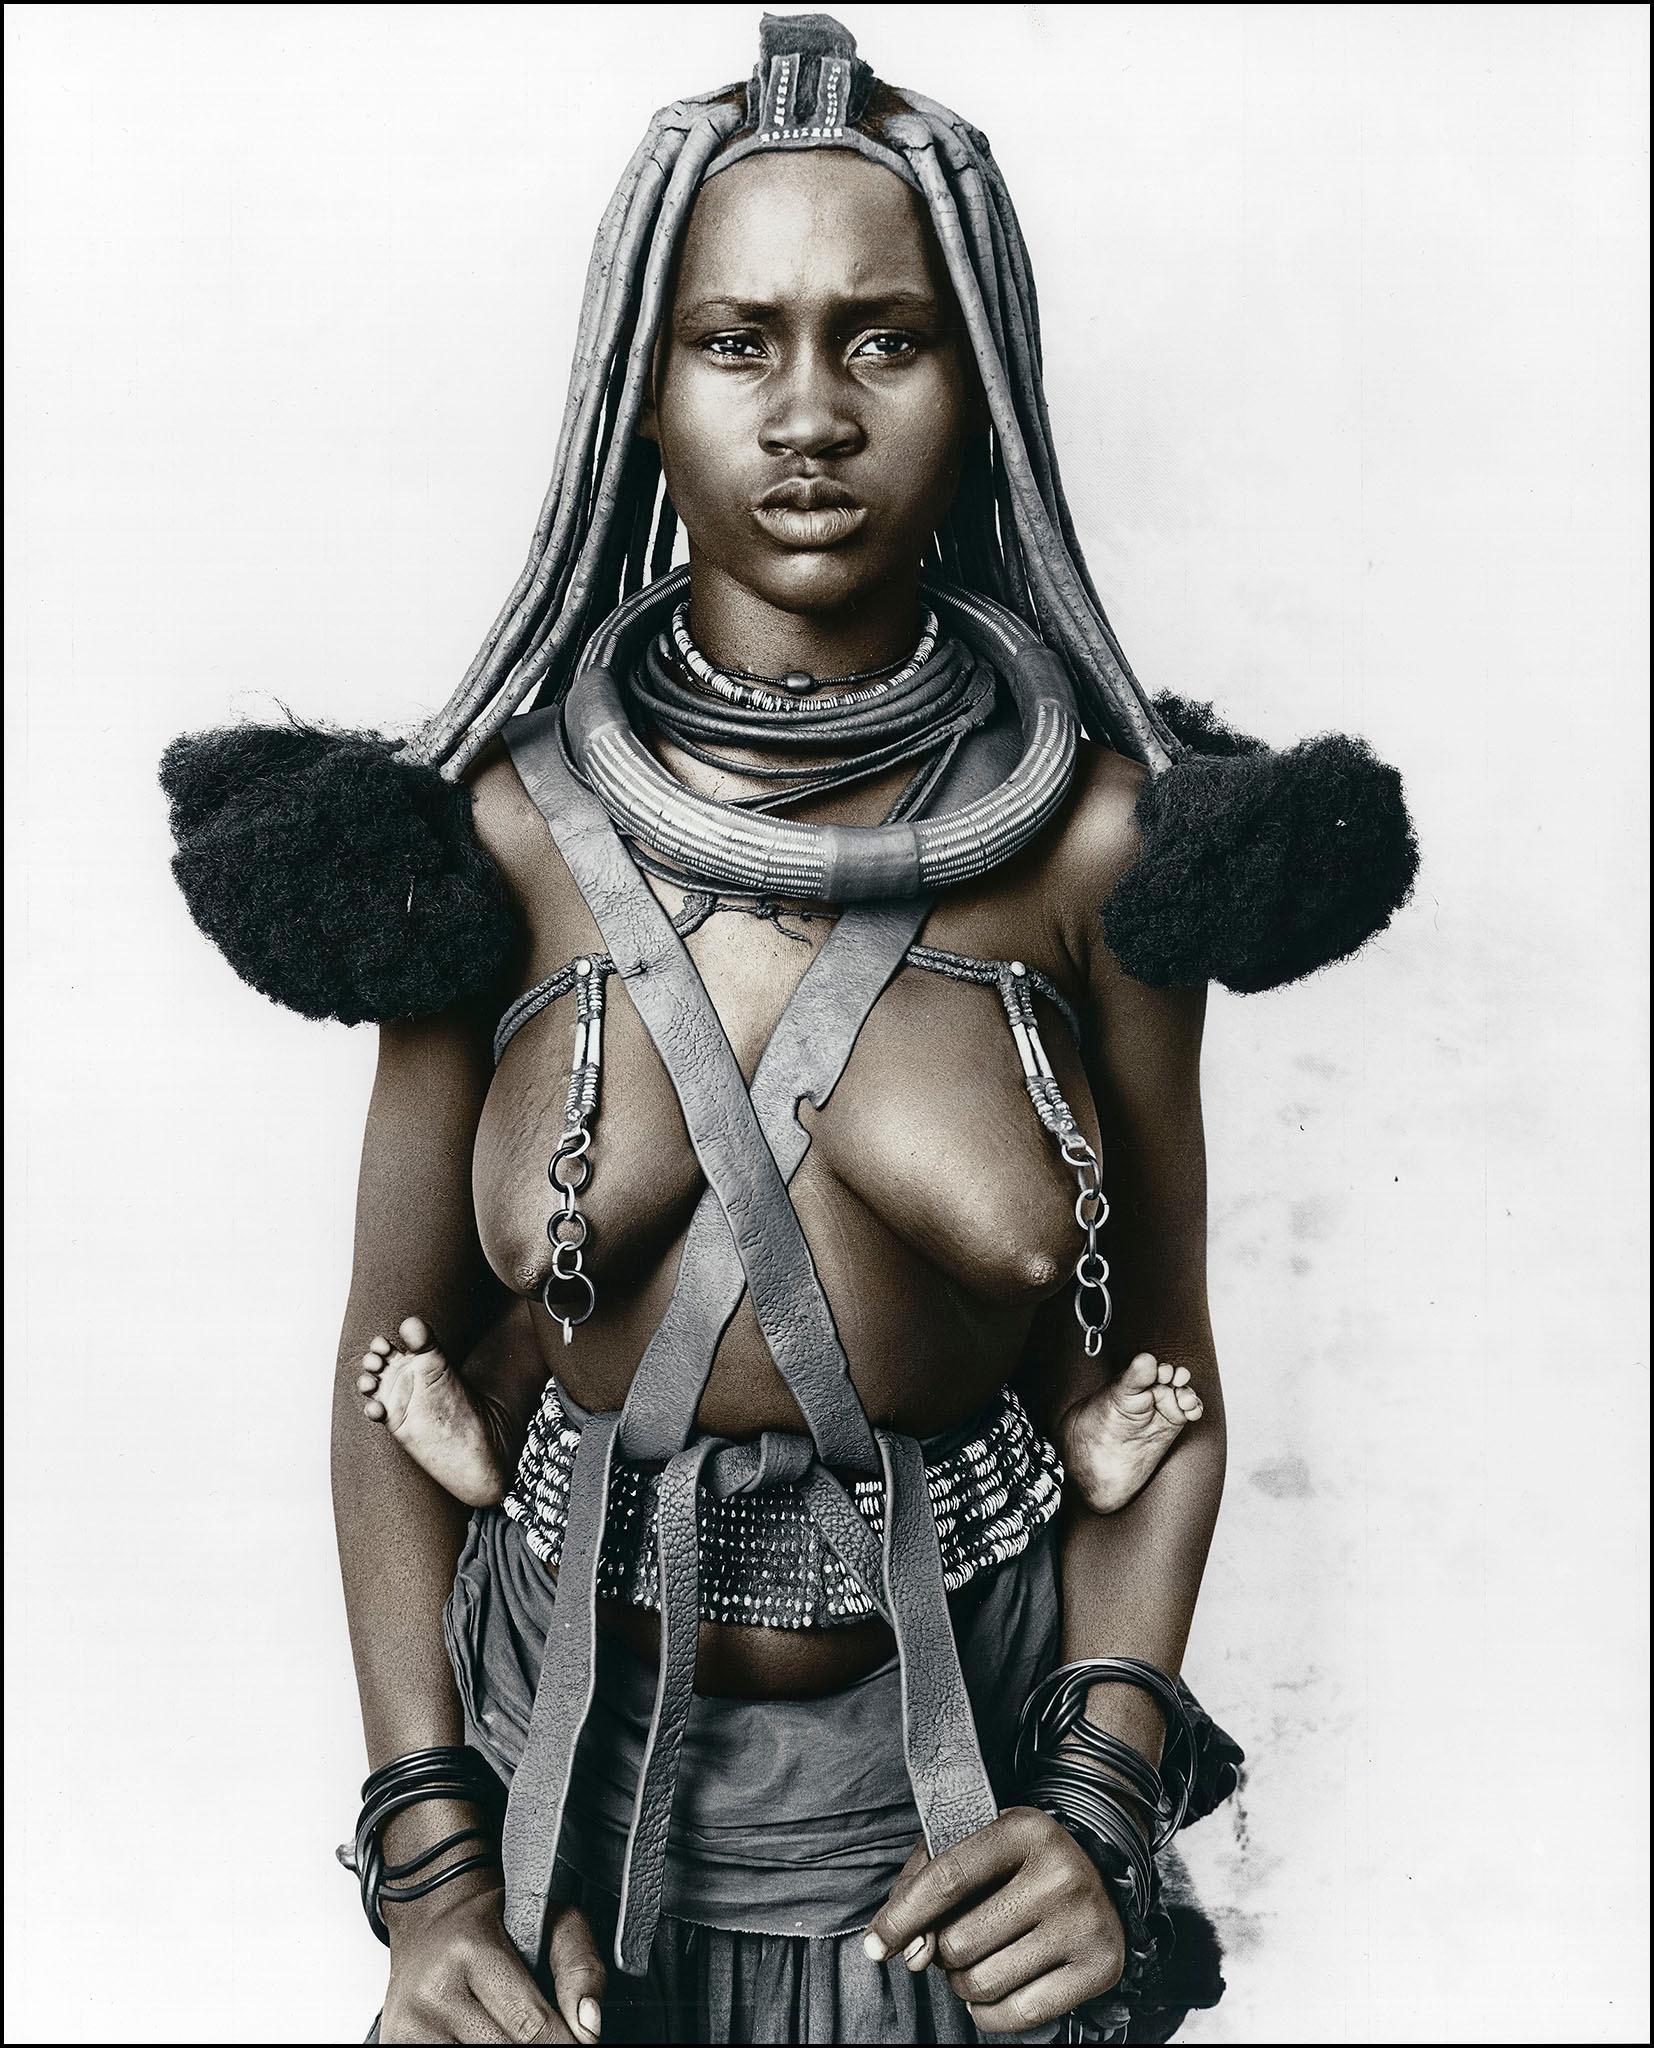 Portrait Photograph Jan C. Schlegel - Hembinda (19), Himba, Namibia, gélatine d'argent, photographie, contemporain